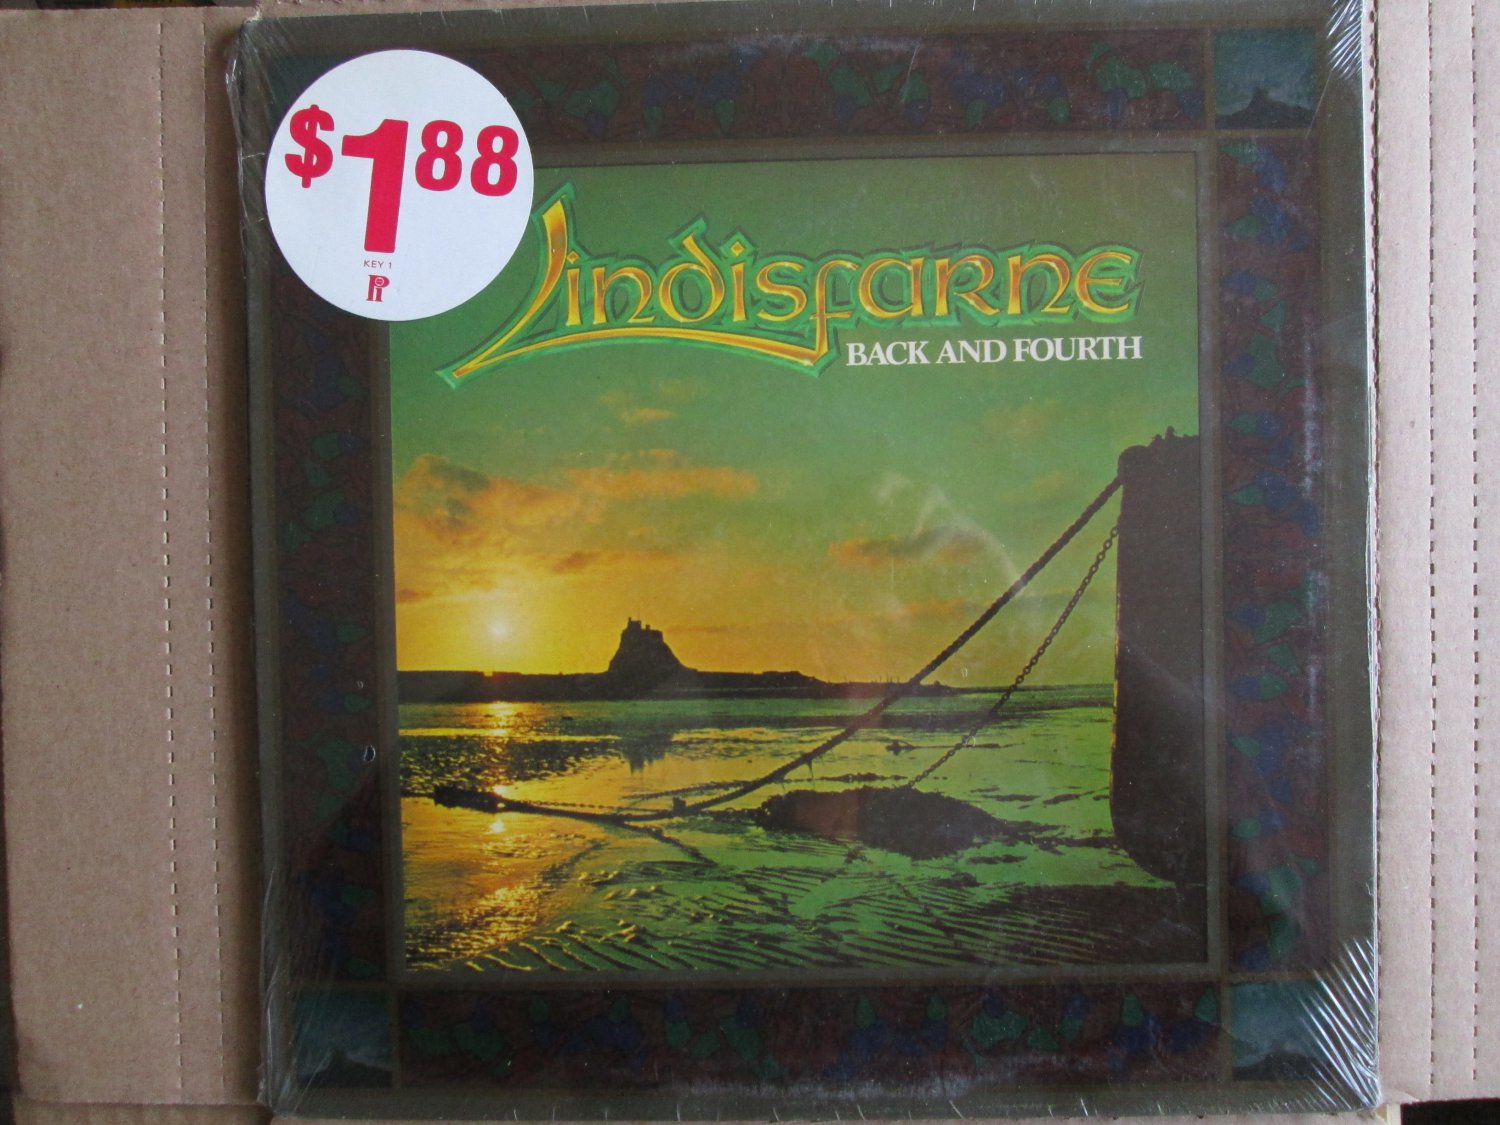 *Lindisfarne* Back and Fourth   1978     Mercury    UK   **Sealed**